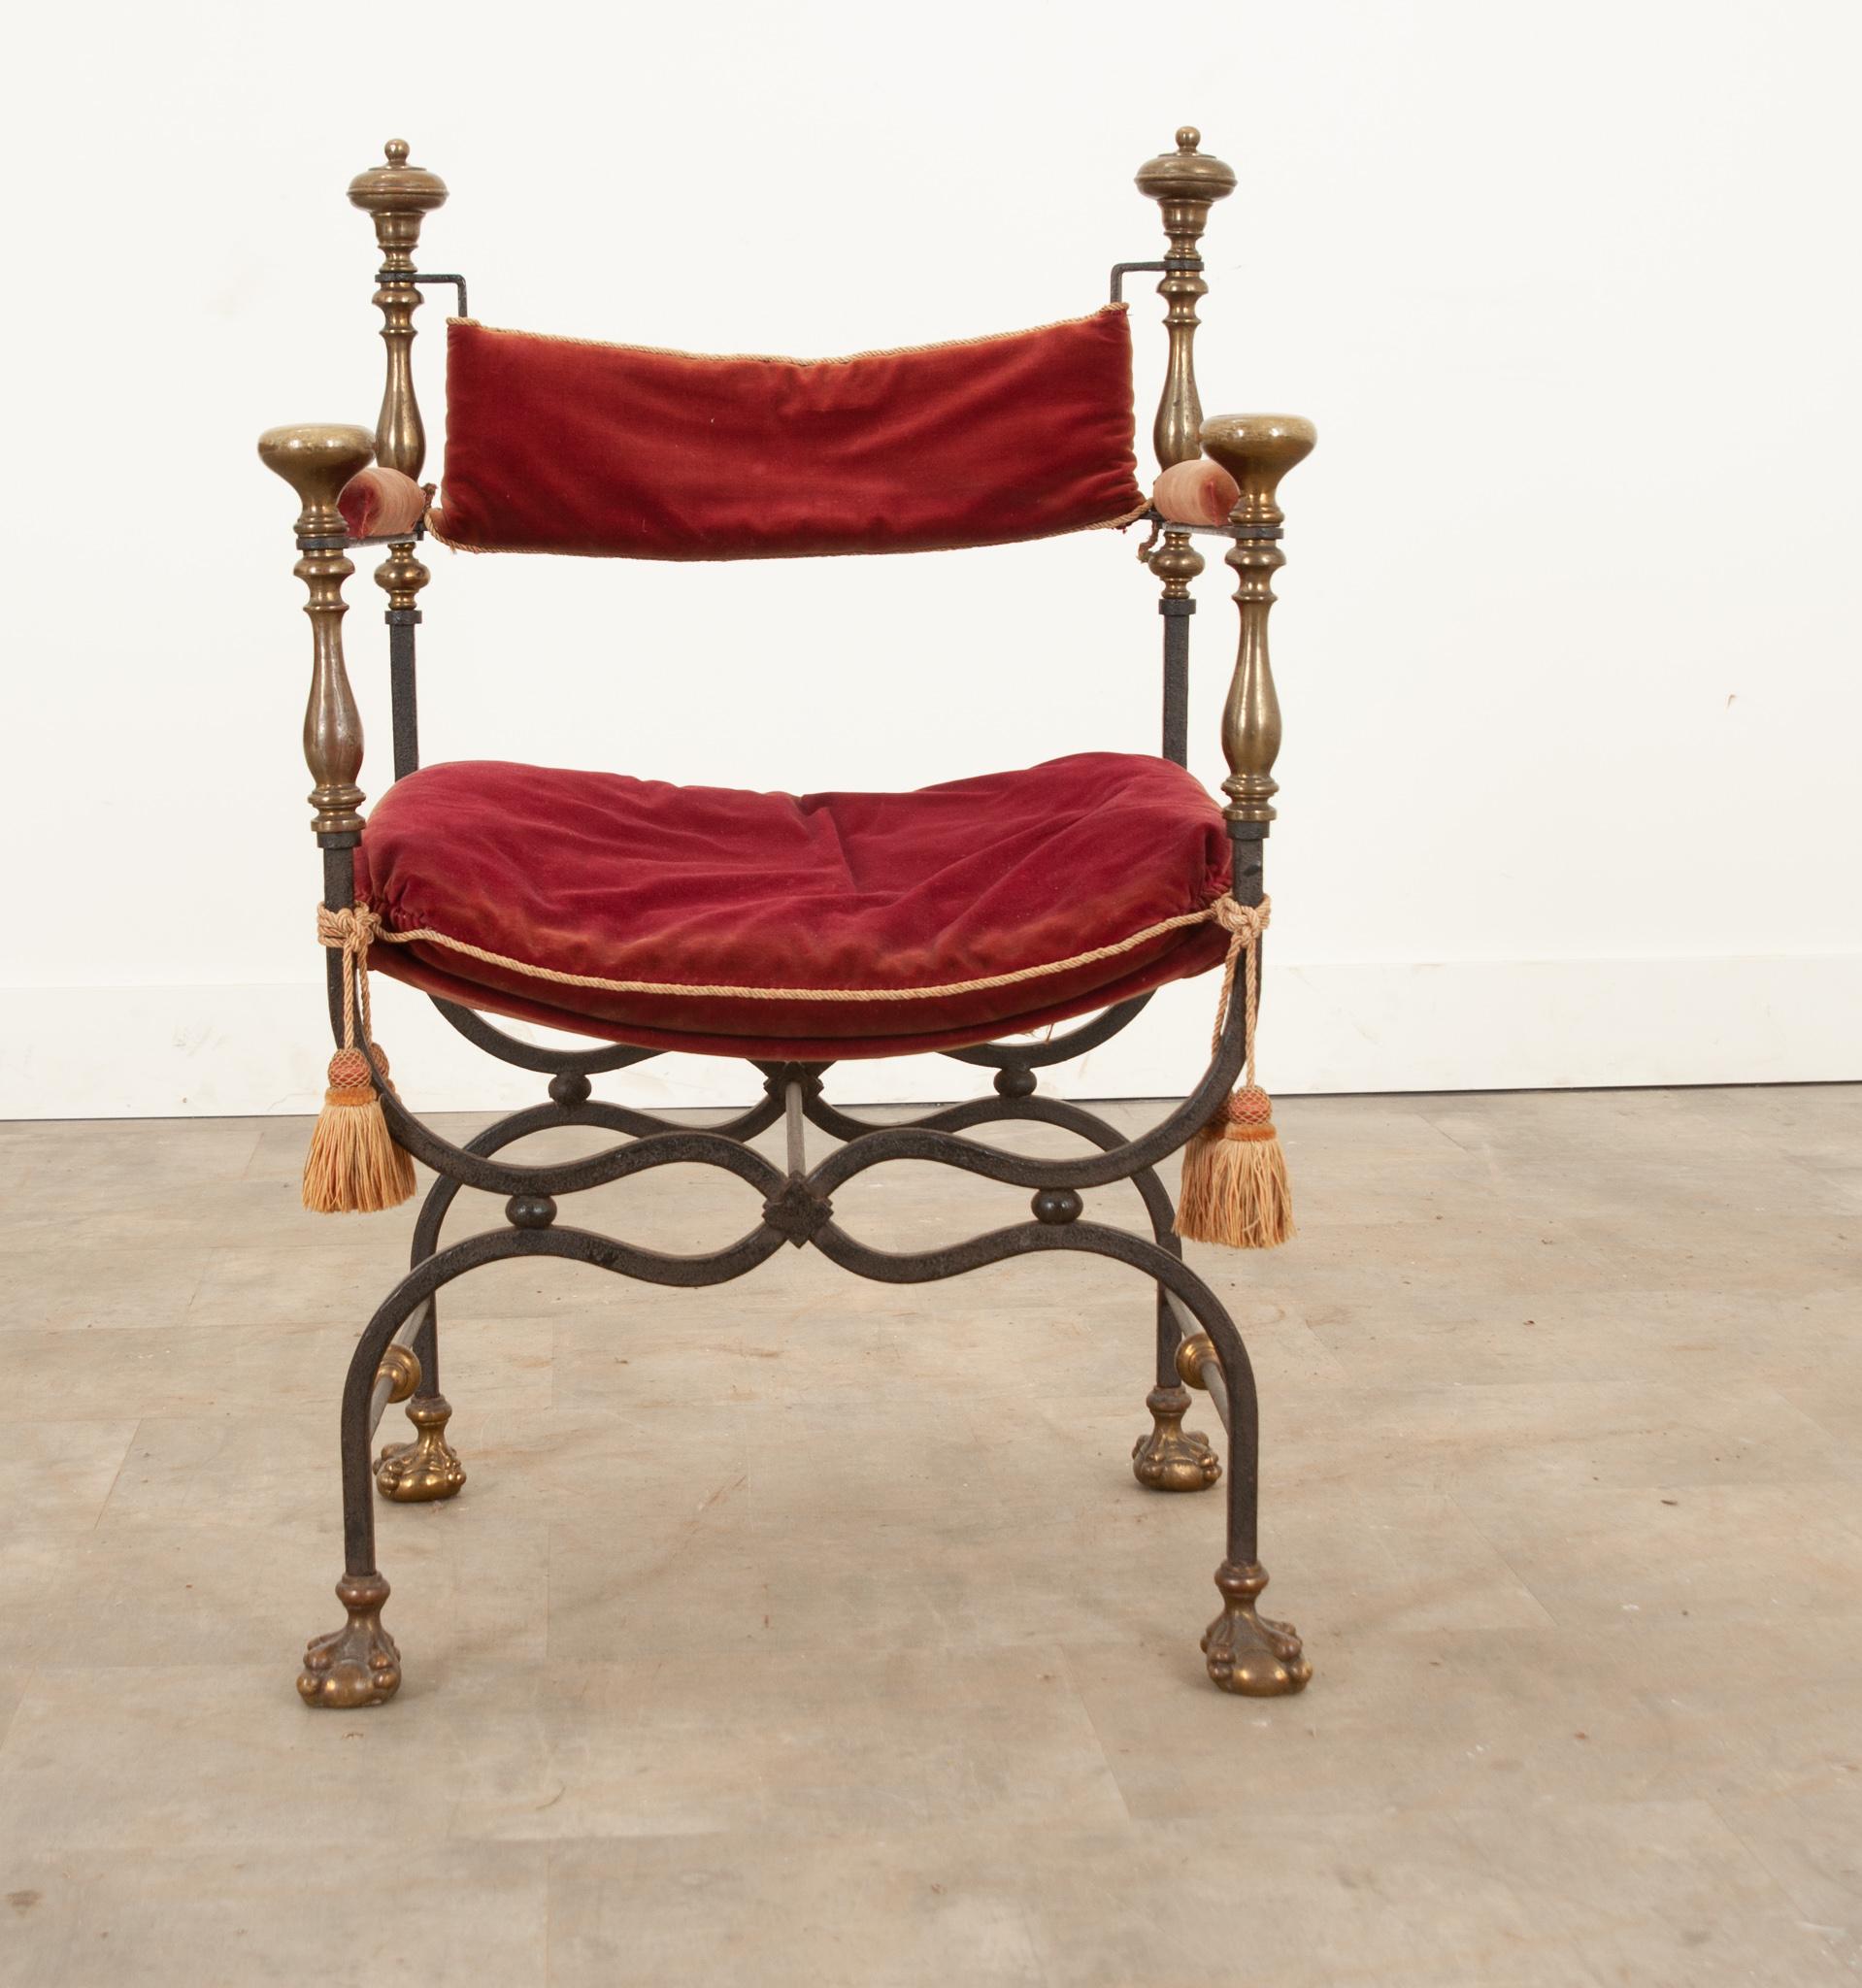 Une fabuleuse chaise Savonarola avec des coussins en velours rouge parfaitement usés et des attaches à pompons de qualité. Les embouts décoratifs en laiton contrastent magnifiquement avec les cadres en fer forgé à la main. Le coussin du bas et de